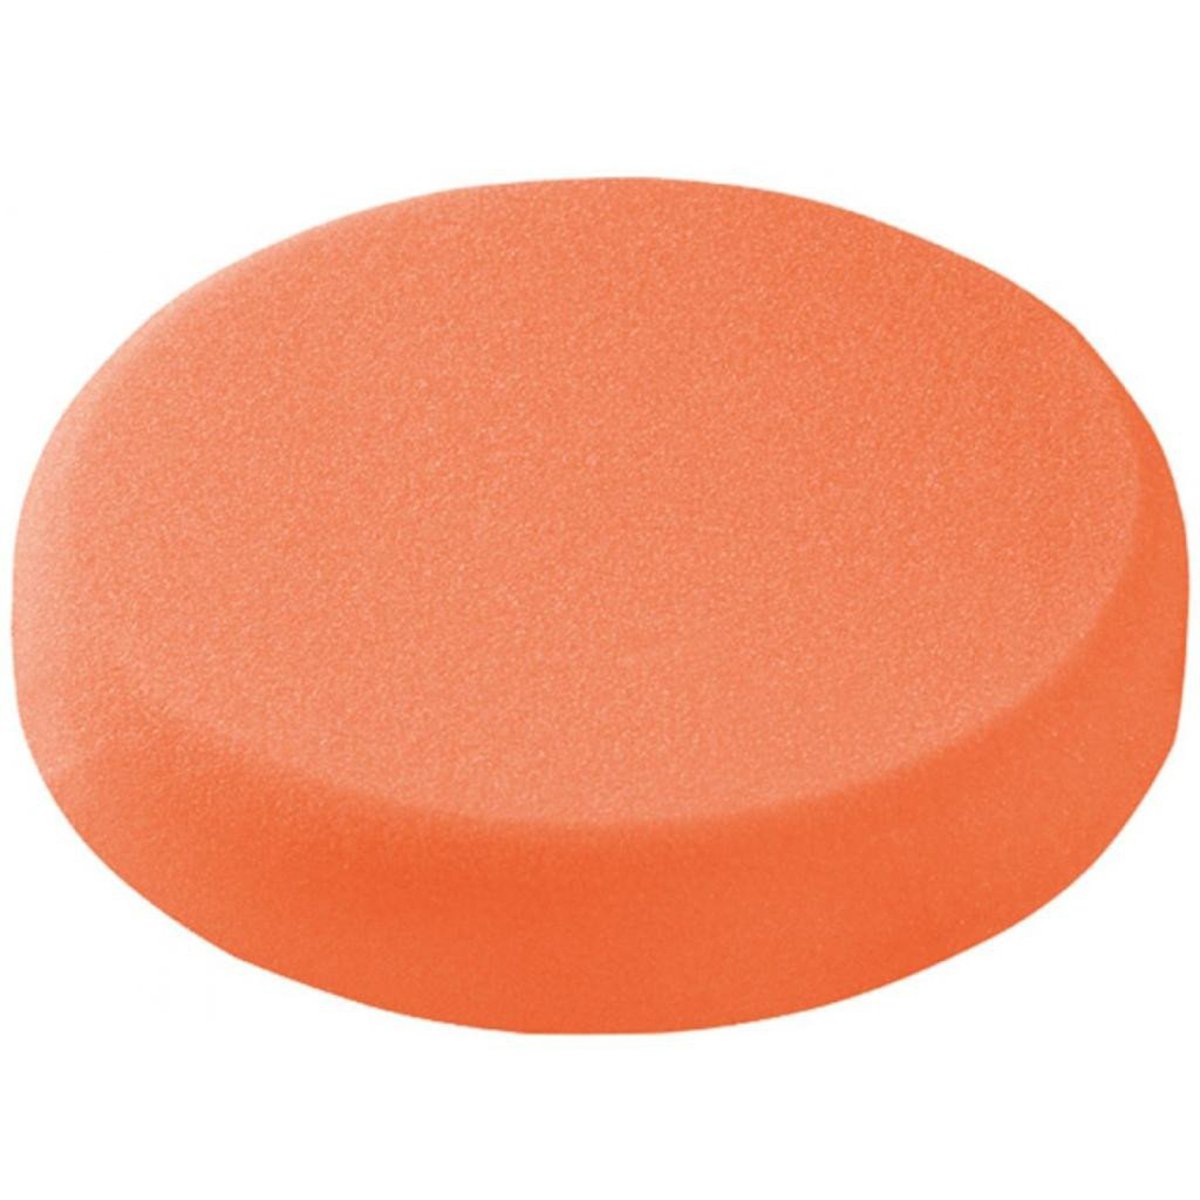 Medium Polishing Sponge, Orange